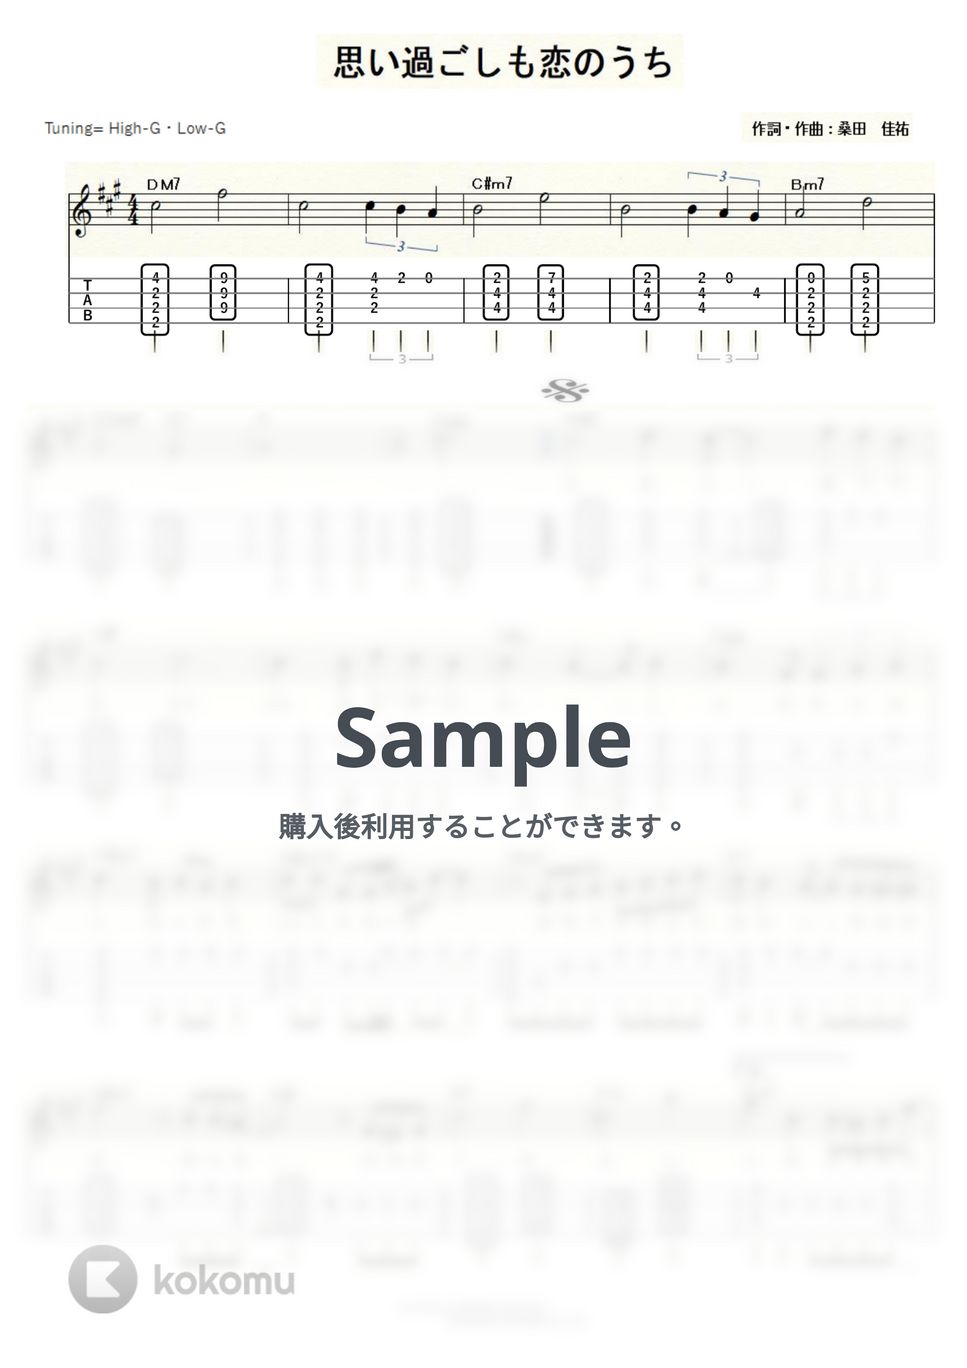 サザンオールスターズ - 思い過ごしも恋のうち (ｳｸﾚﾚｿﾛ/High-G・Low-G/中級) by ukulelepapa